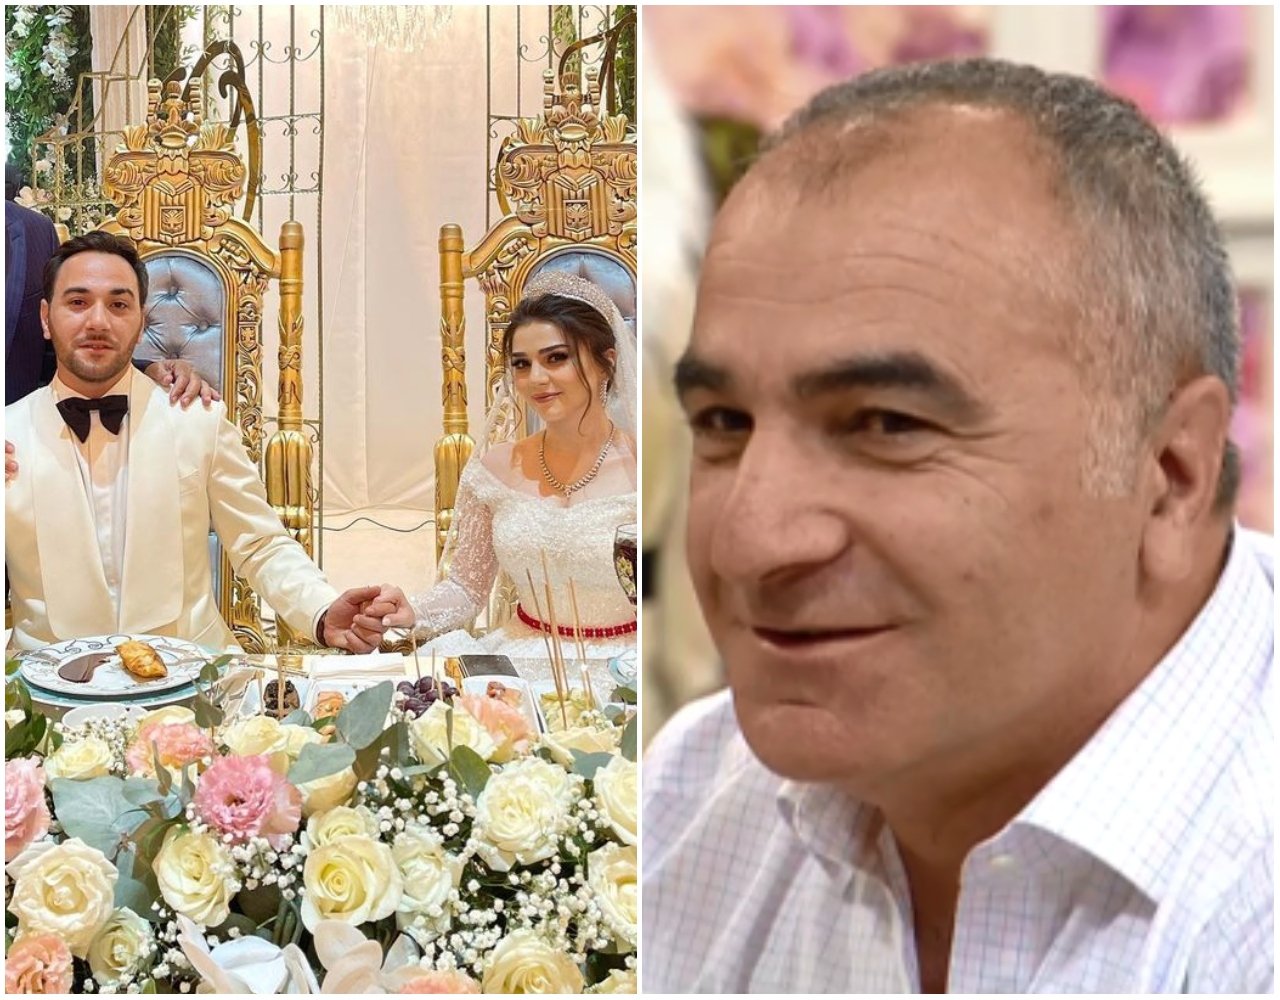 Azərbaycanlı iş adamının müğənni oğlu evləndi